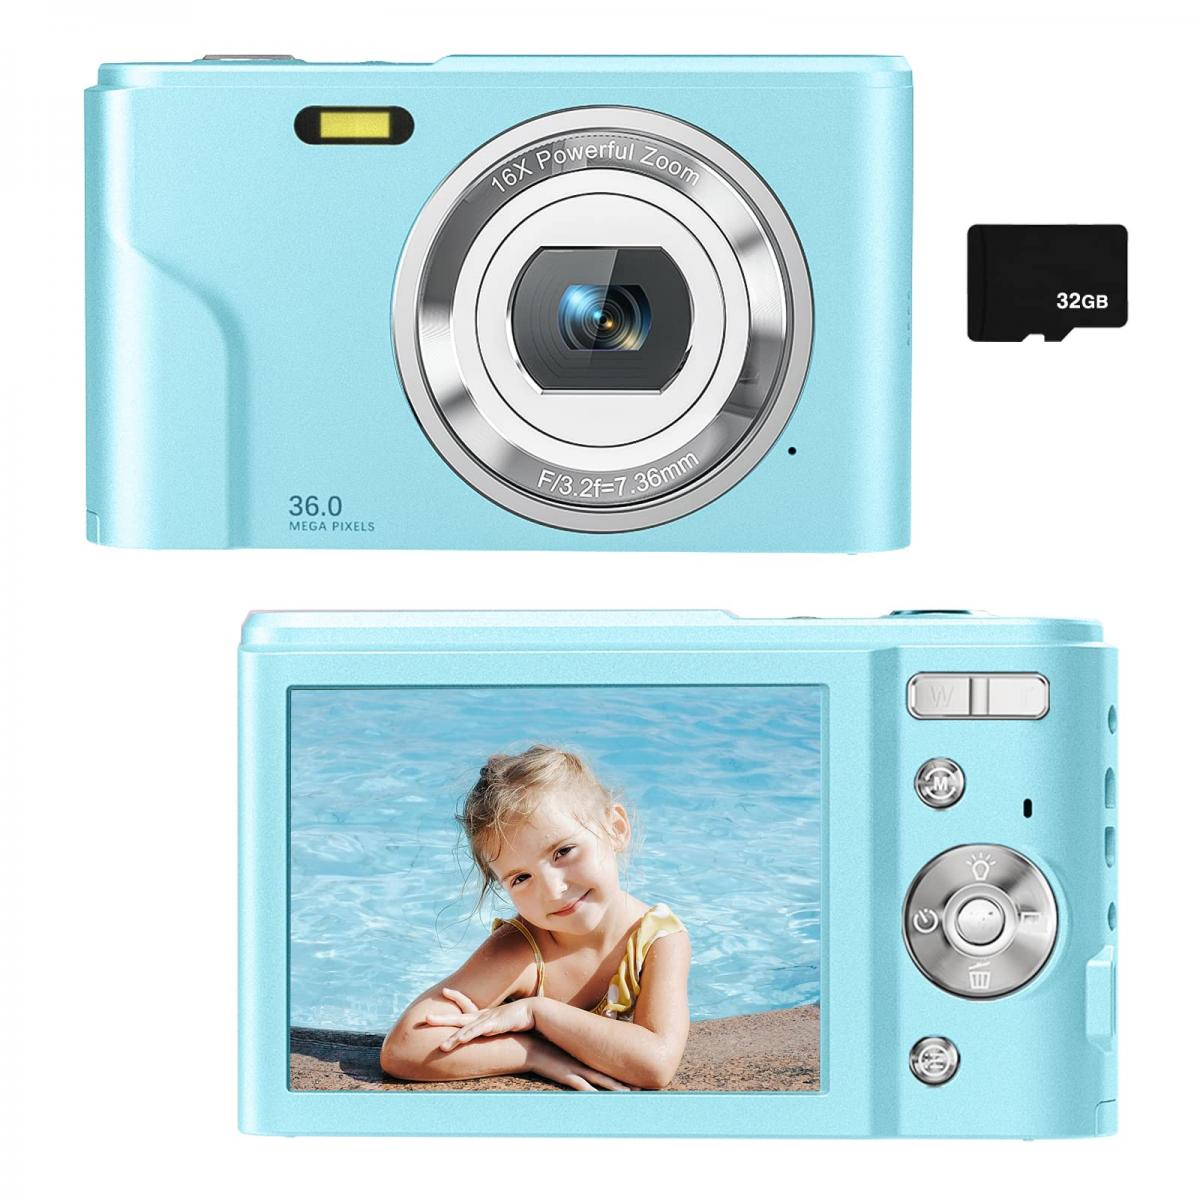 4€02 sur Appareil photo numérique portable 1080P 16X Zoom_Co003 - Appareil  photo compact - Achat & prix